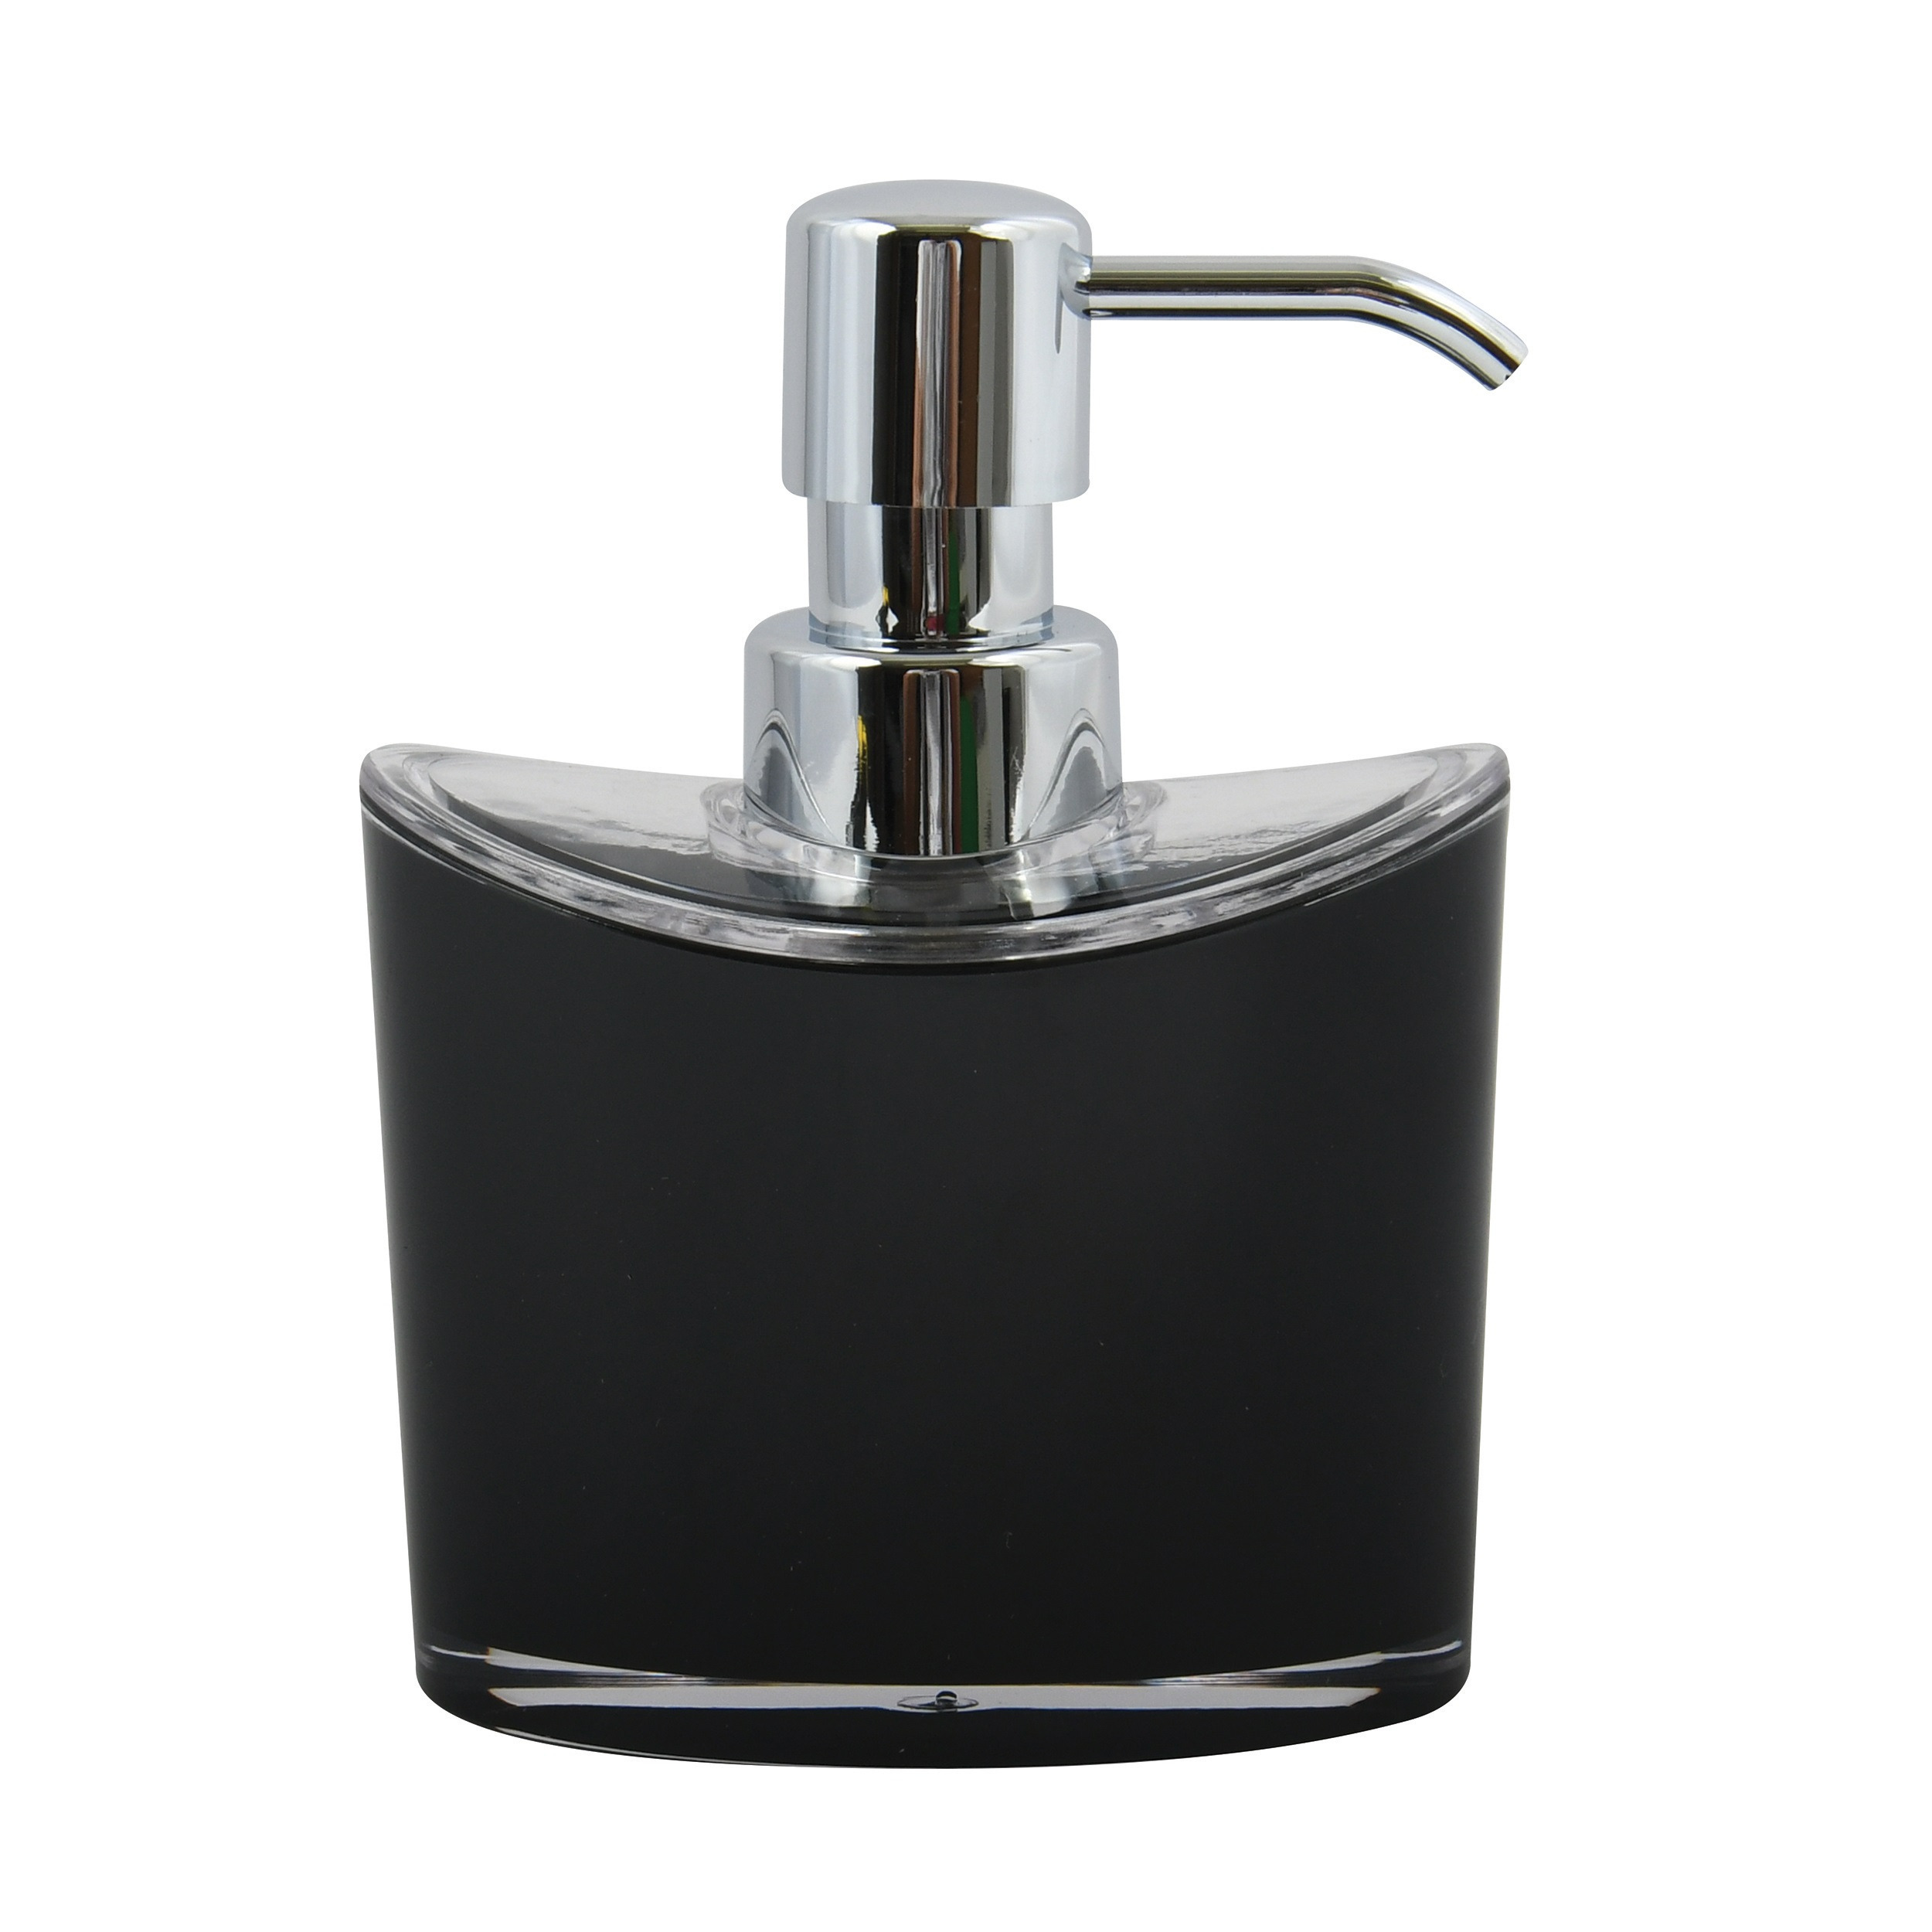 Zeeppompje-zeepdispenser Aveiro PS kunststof zwart-zilver 11 x 14 cm 260 ml